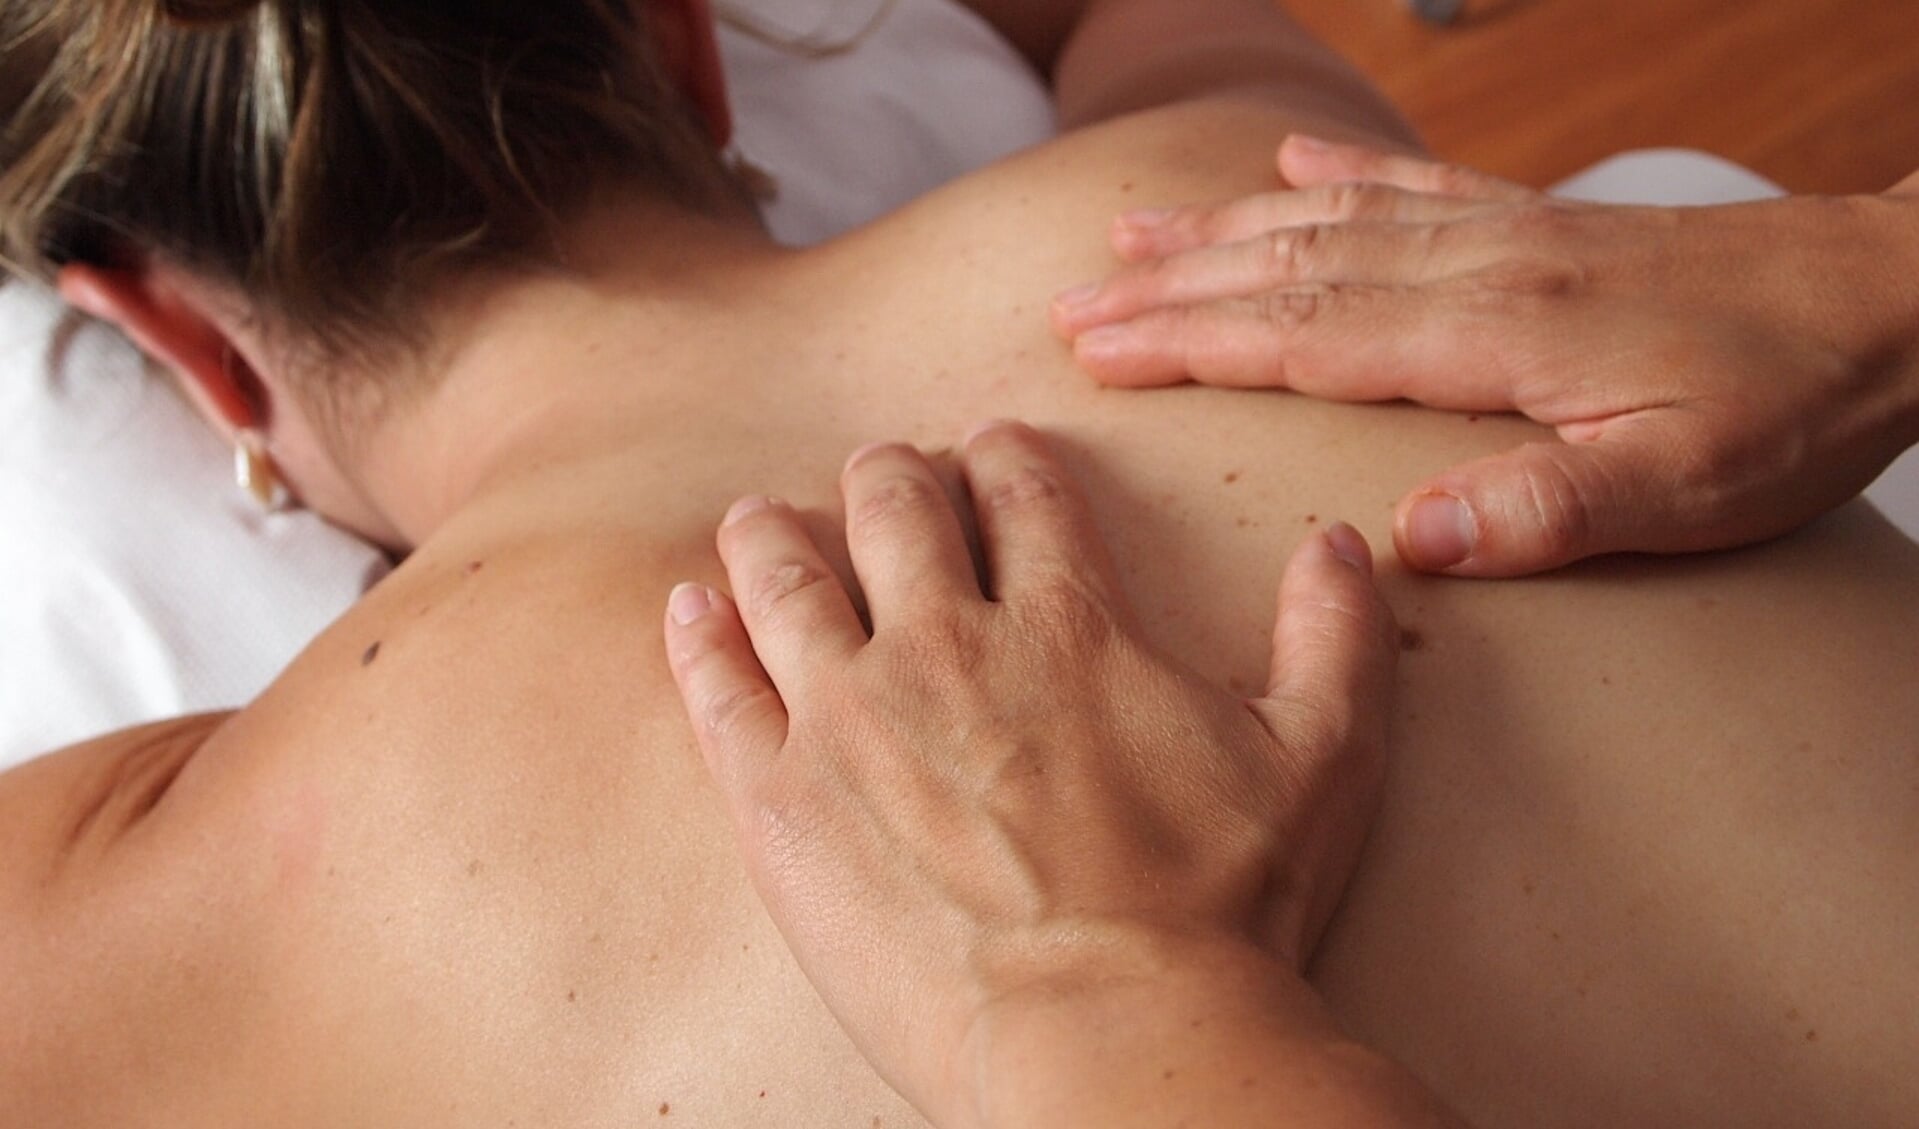 In alle zes de Haarlemmermeerse massagesalons worden tijdens massages illegale seksuele handelingen verricht. 